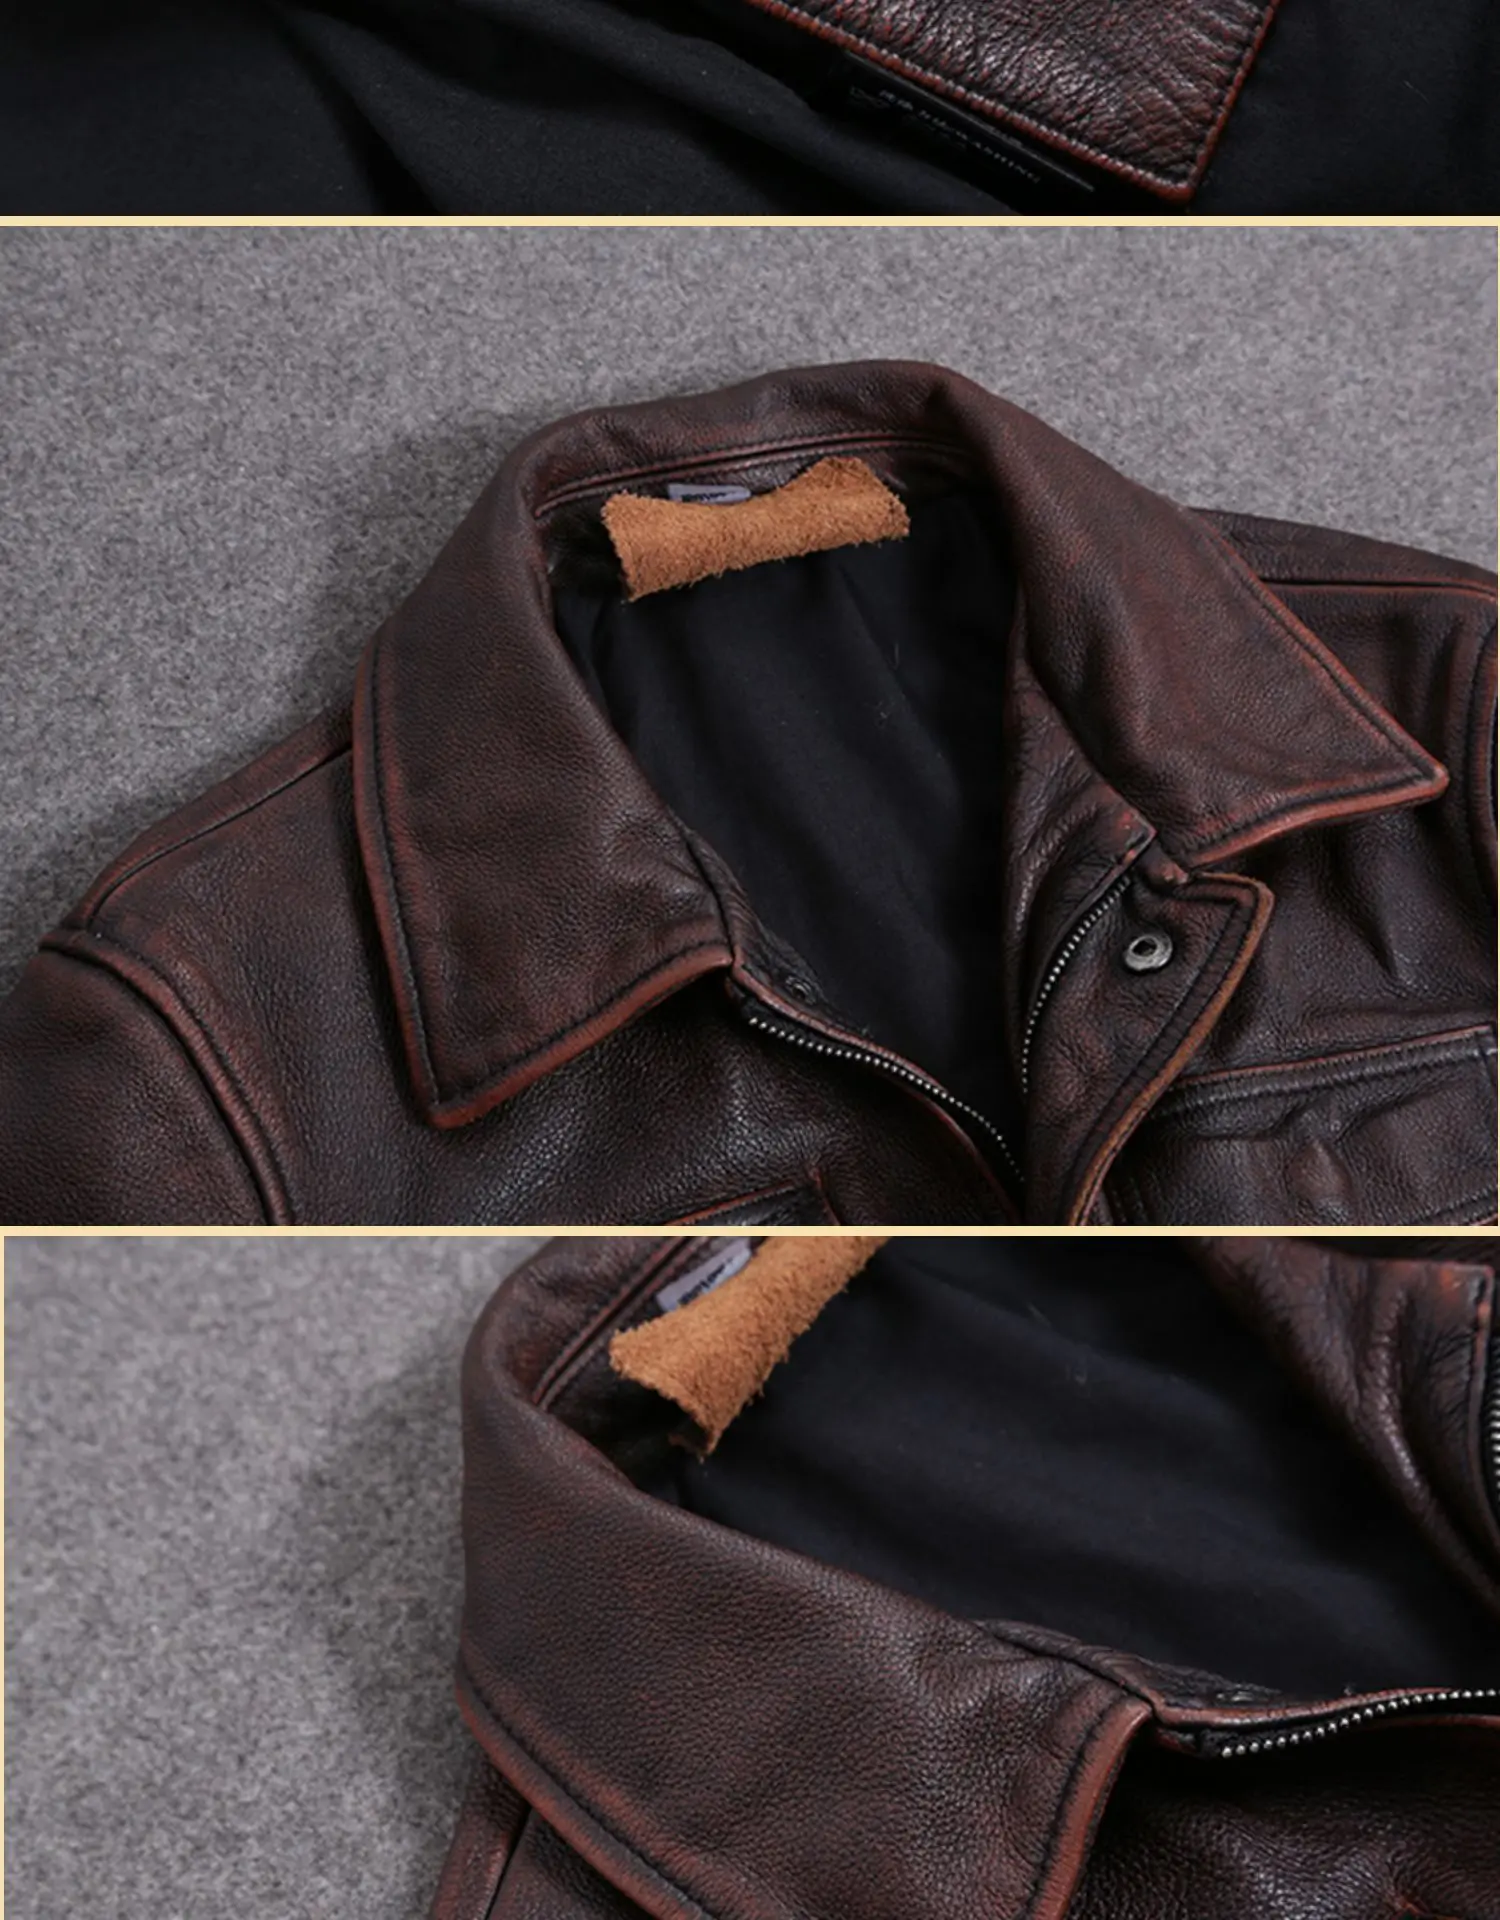 H44b3bfd6b6424f3b86f645da82b43a40E AYUNSUE Vintage Genuine Cow Leather Jacket Men Plus Size Cowhide Leather Coat Slim Short Jacket Veste Cuir Homme L-Z-14 YY1366